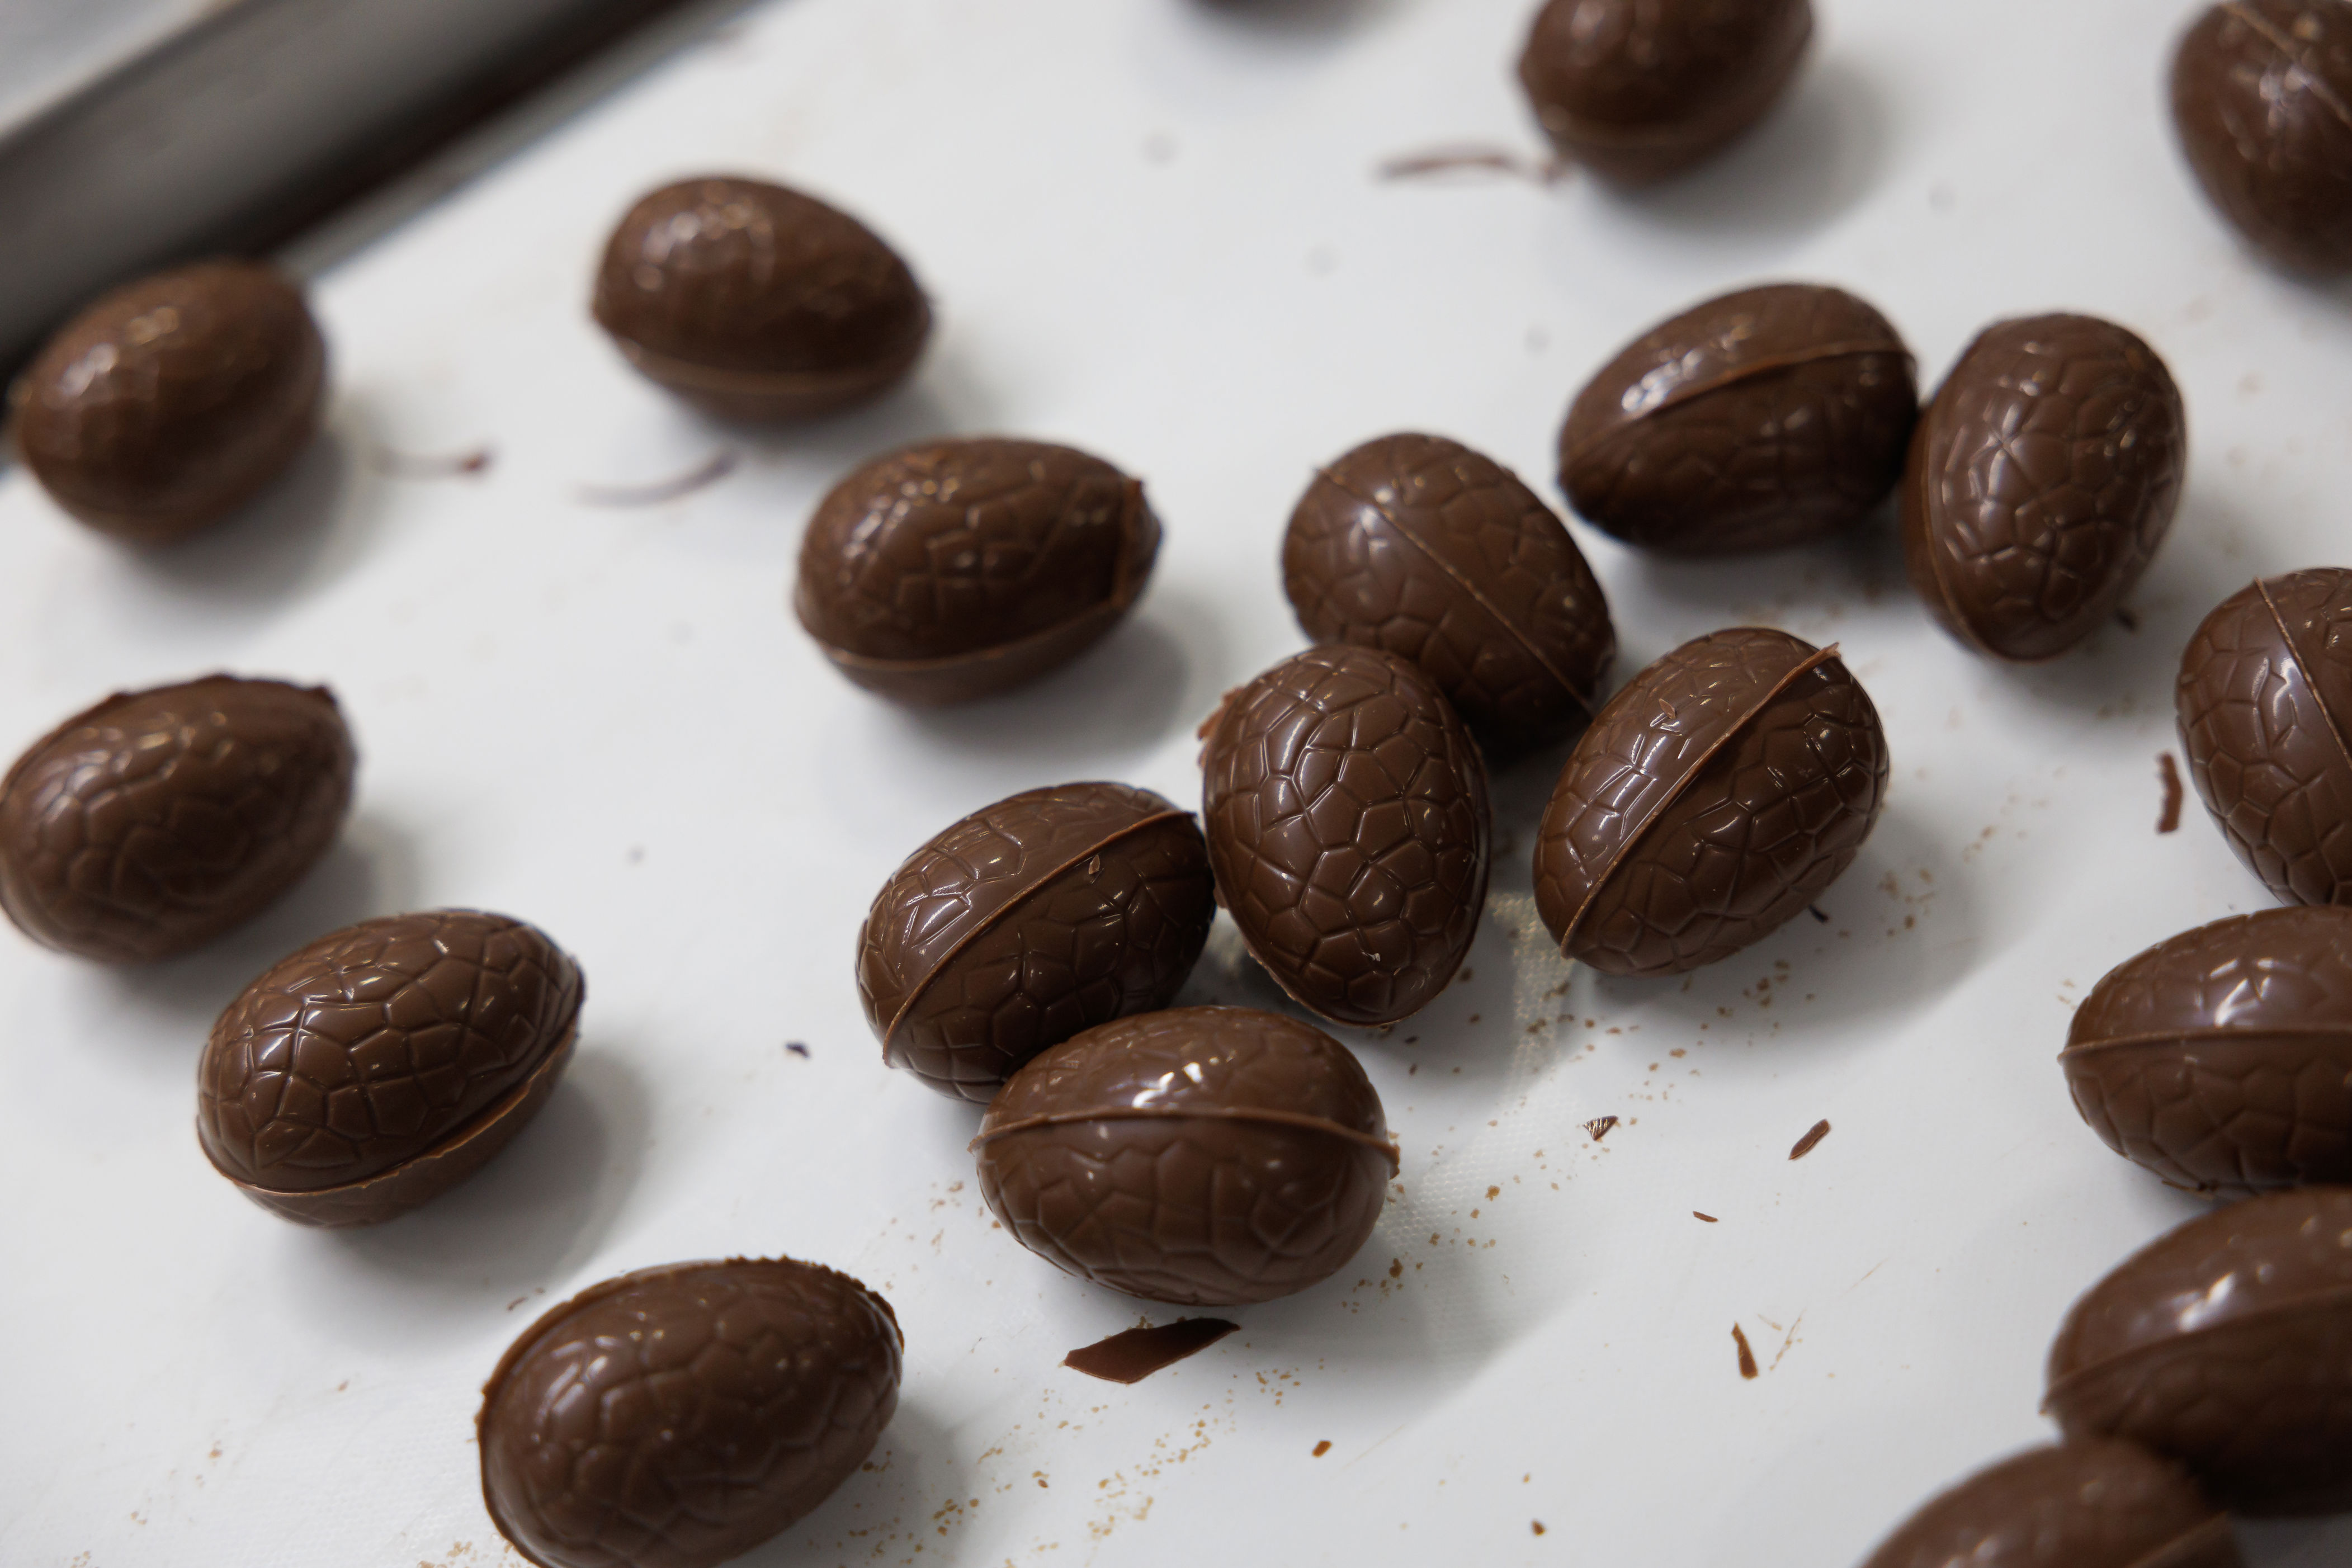 les chocolatiers belges veulent pousser le secteur vers plus de durabilité